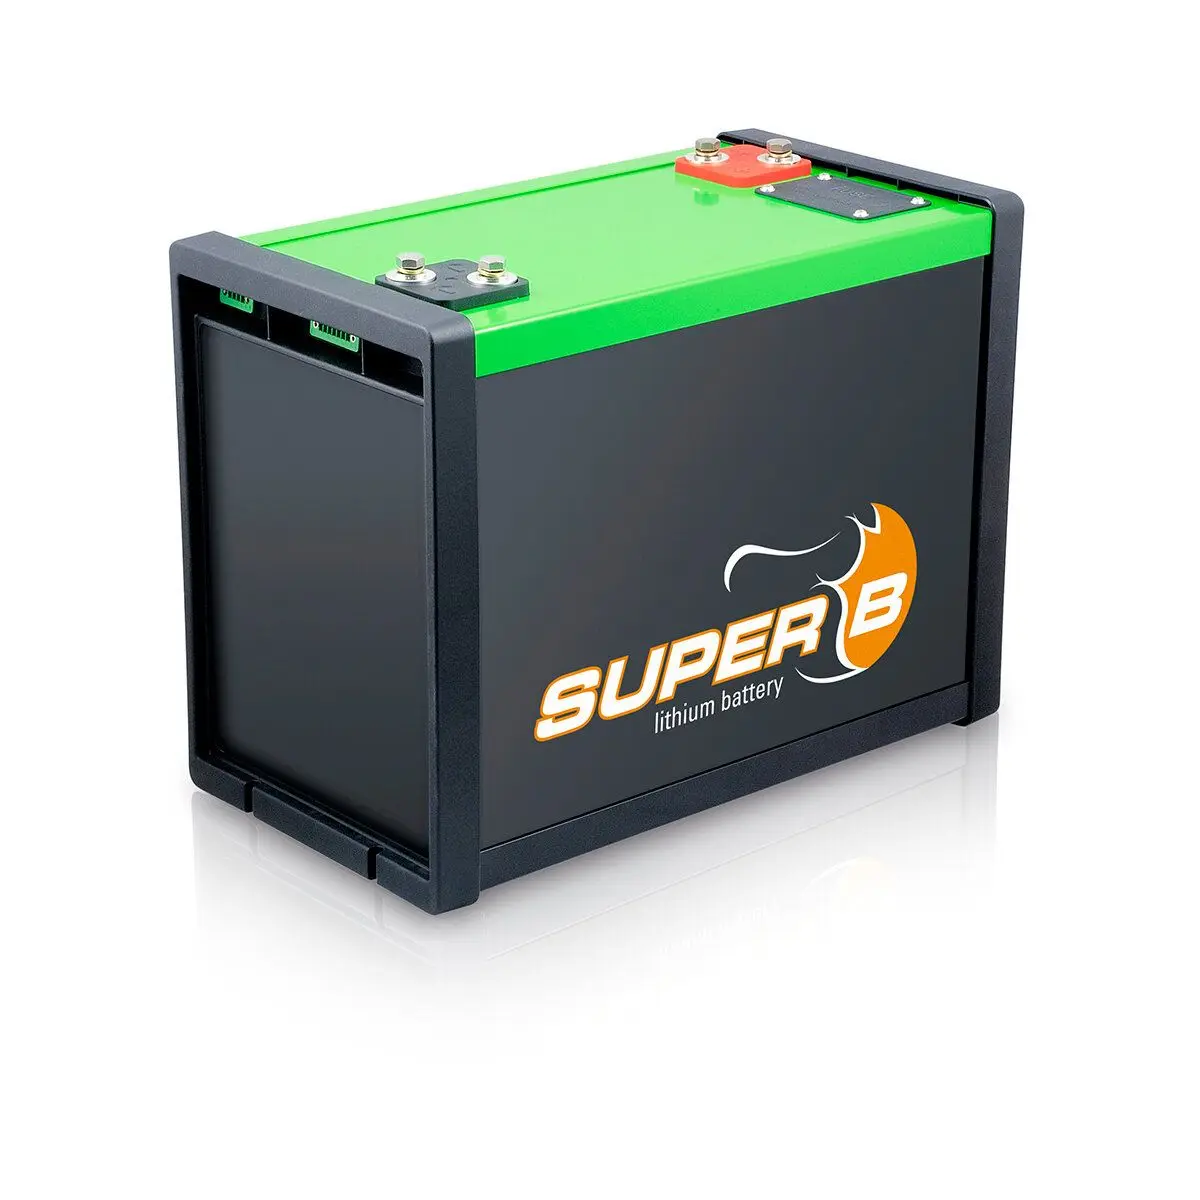 Baterie cu litiu Super-B - B 100, 100 Ah